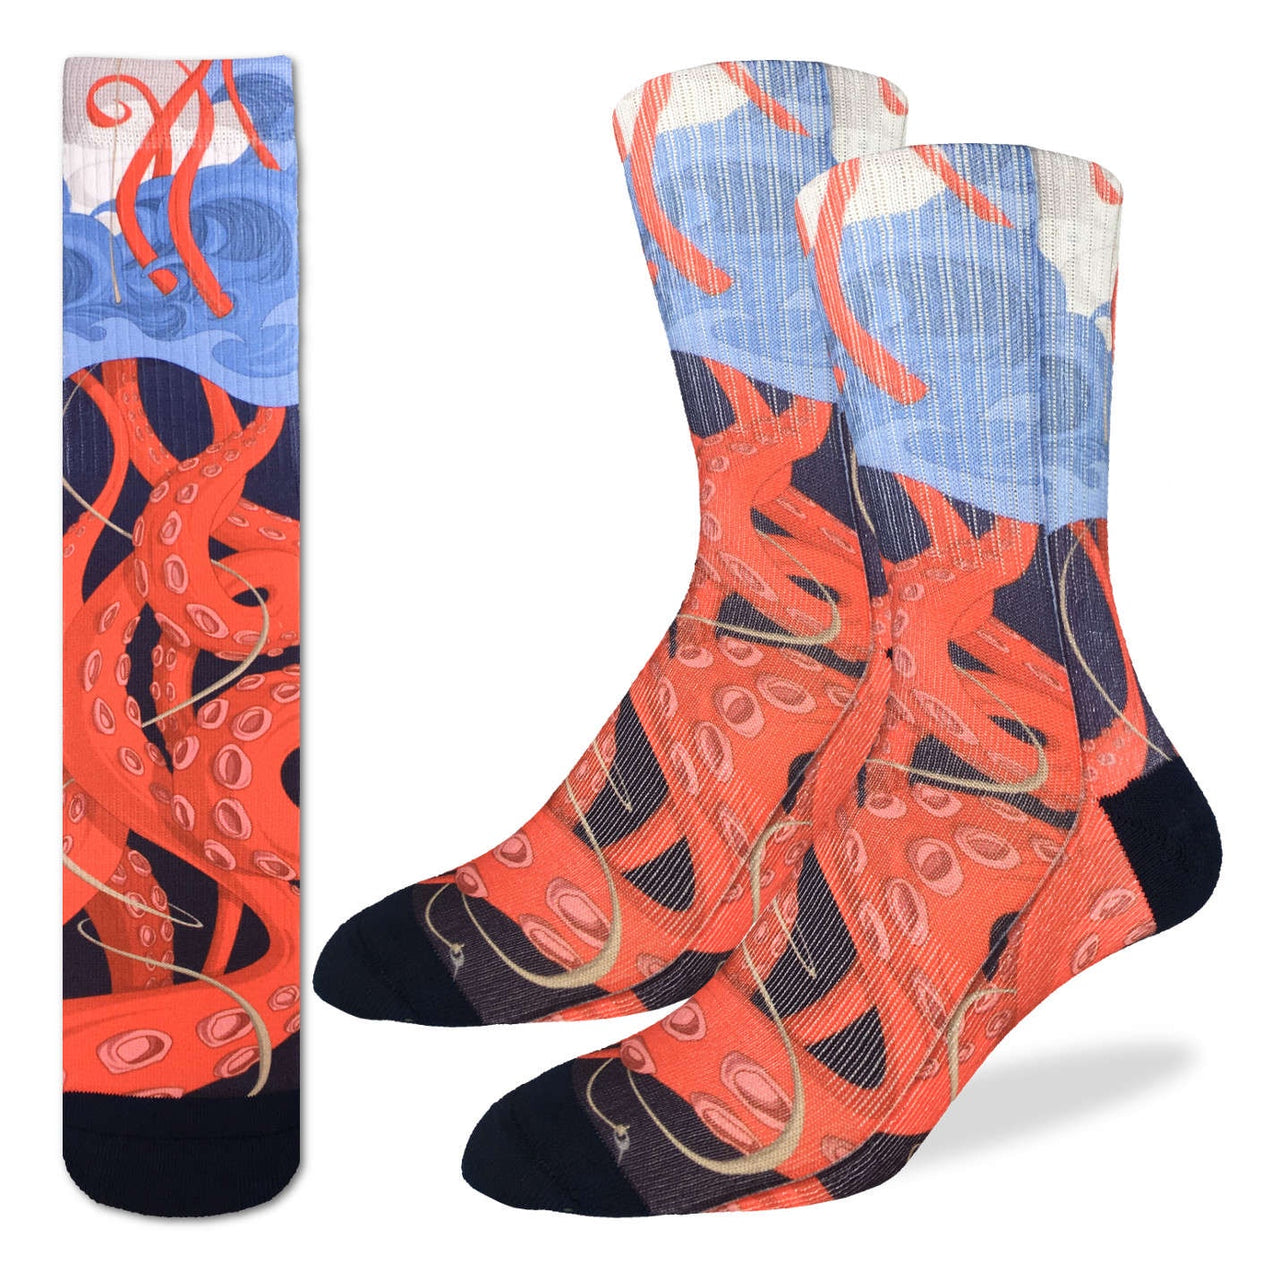 Men's Socks - Kraken